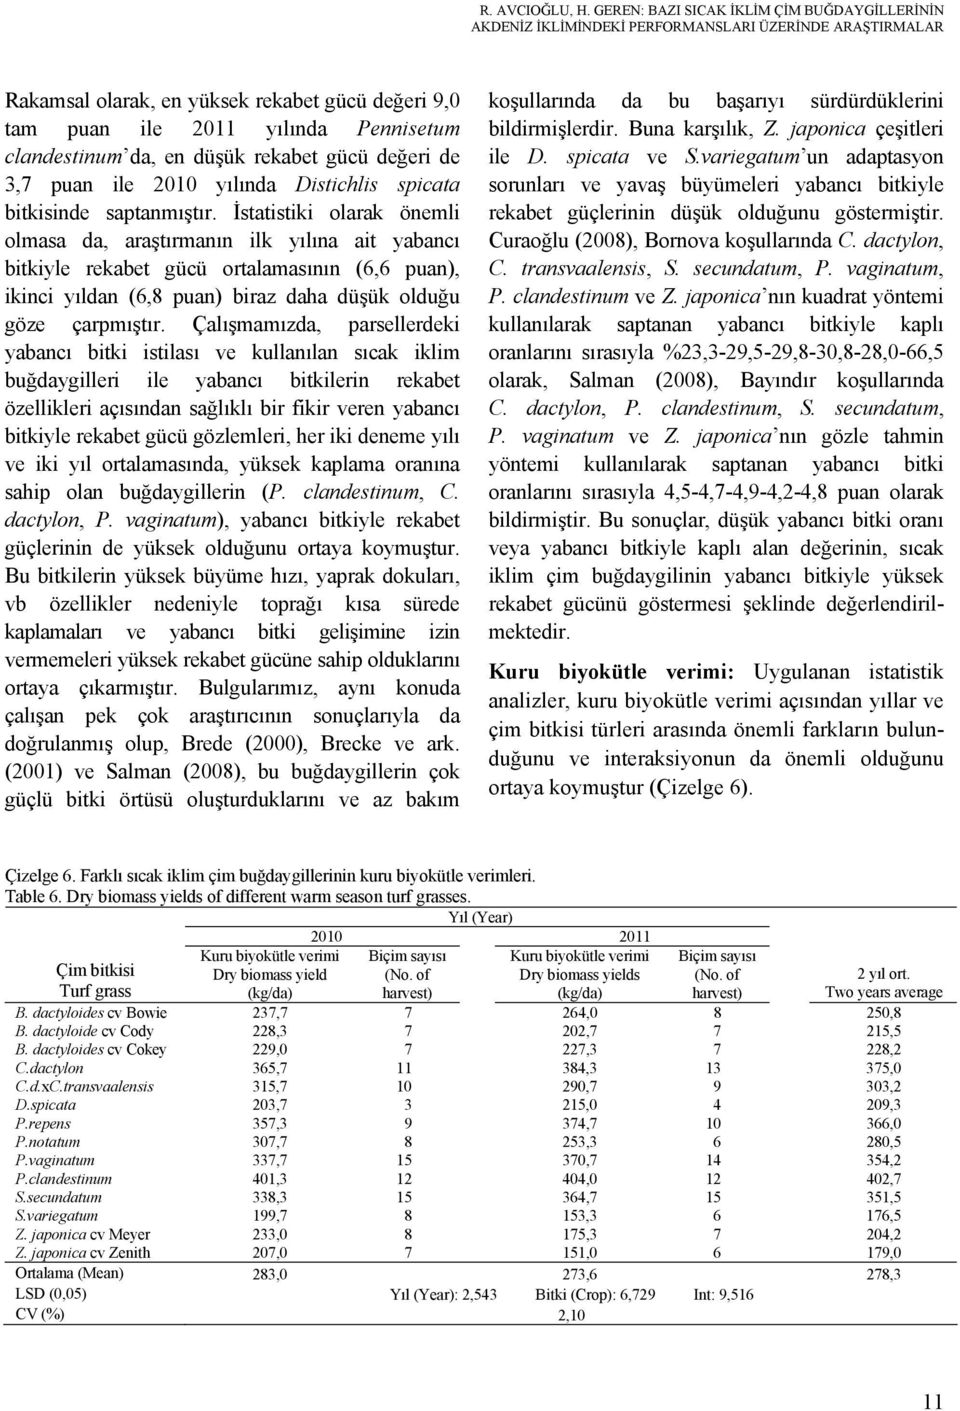 clandestinum da, en düşük rekabet gücü değeri de 3,7 puan ile 2010 yılında Distichlis spicata bitkisinde saptanmıştır.